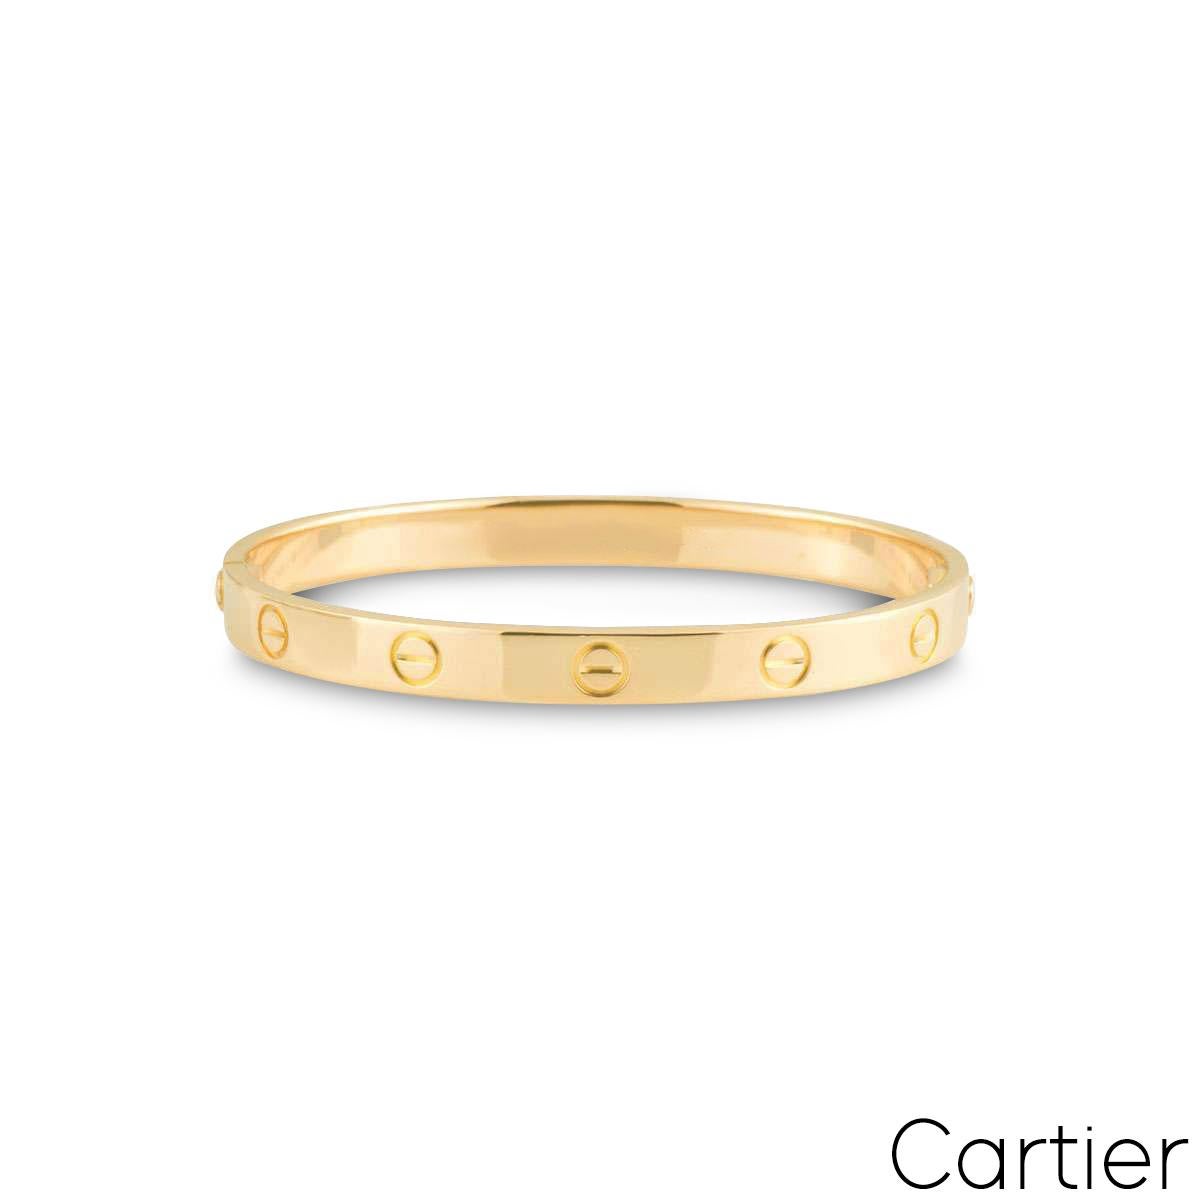 Un bracelet Cartier en or jaune 18 carats de la collection Love. Le bracelet arbore le motif de la vis sur le pourtour extérieur et présente le nouveau style de fixation de la vis. Ce bracelet est de taille 19 et pèse 36,6 grammes. 

Il est